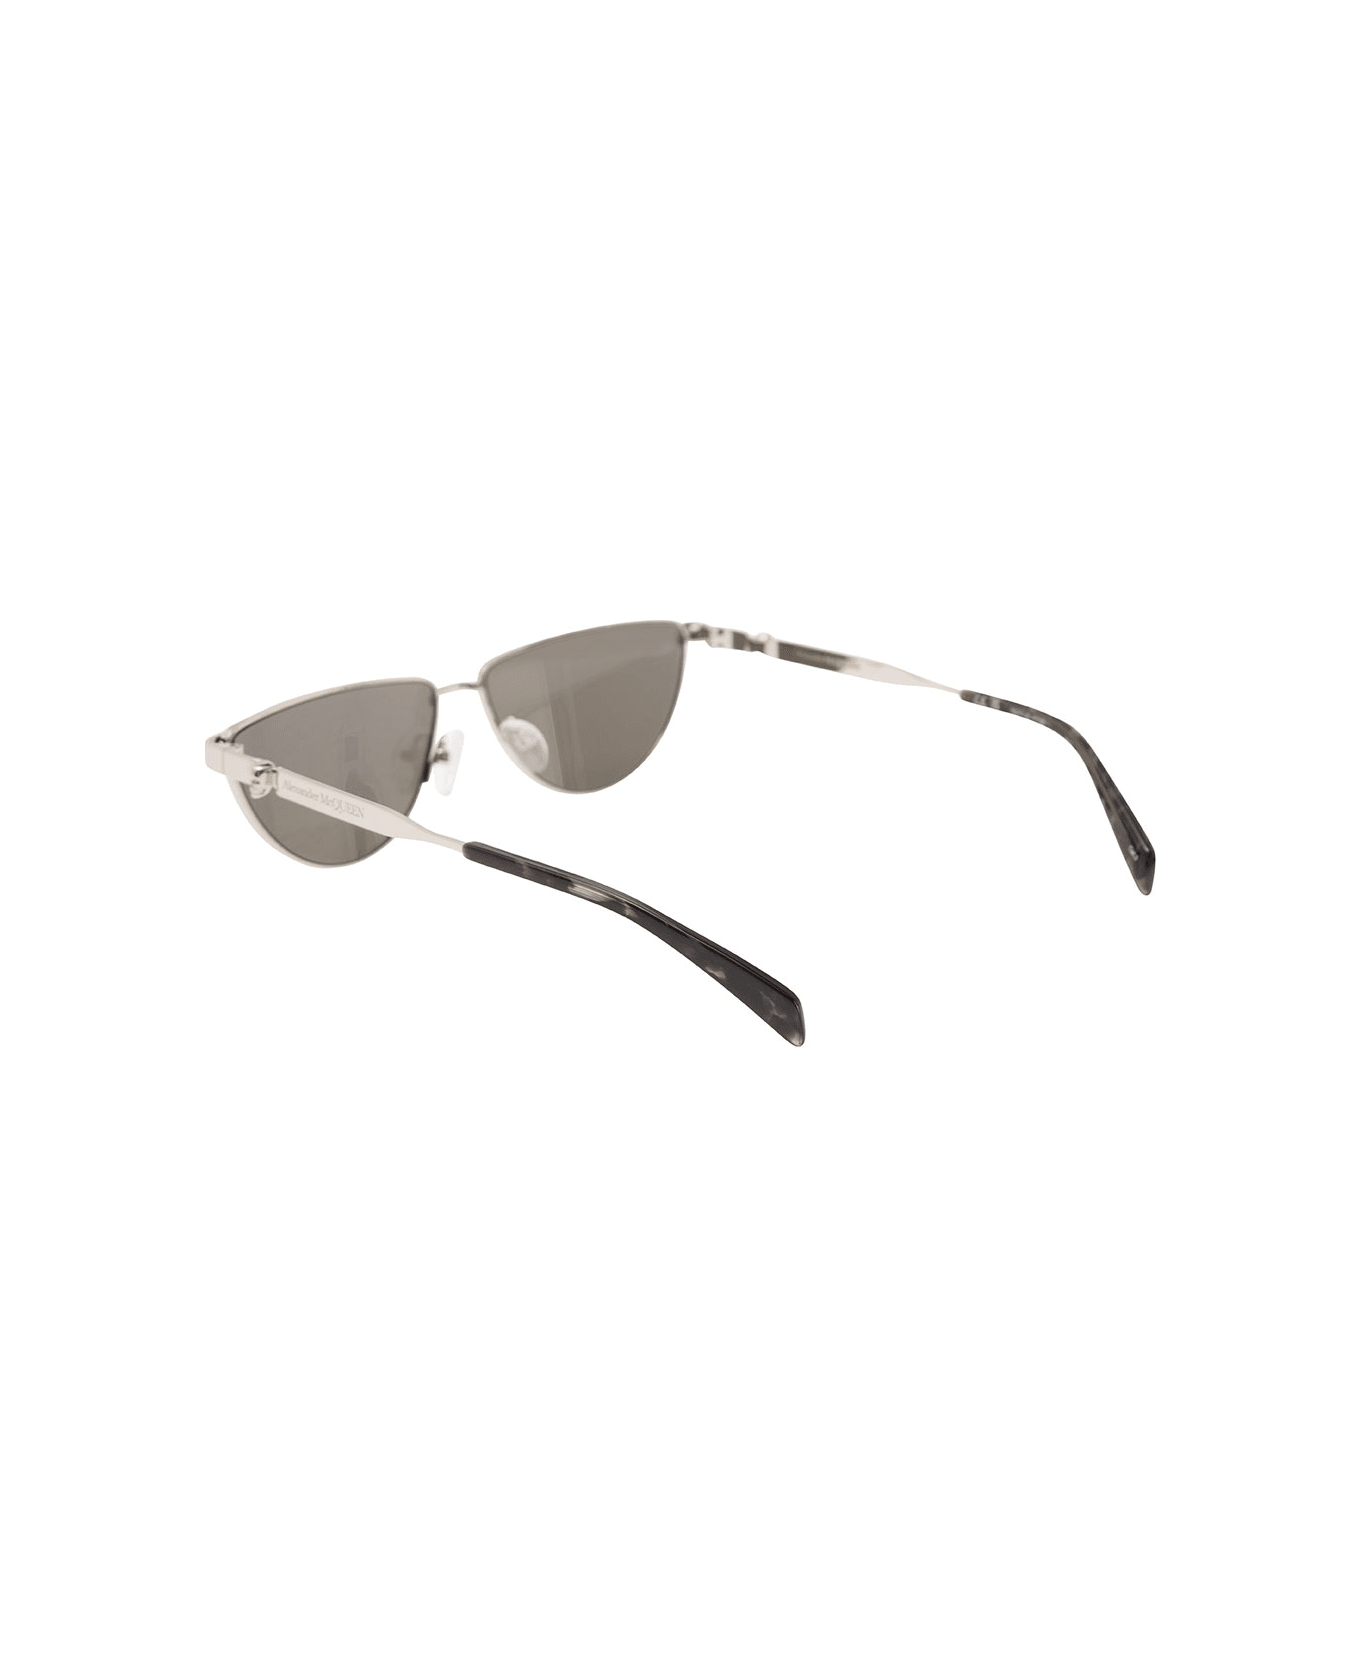 Alexander McQueen Sunglasses With Metal Frame - Metallic サングラス